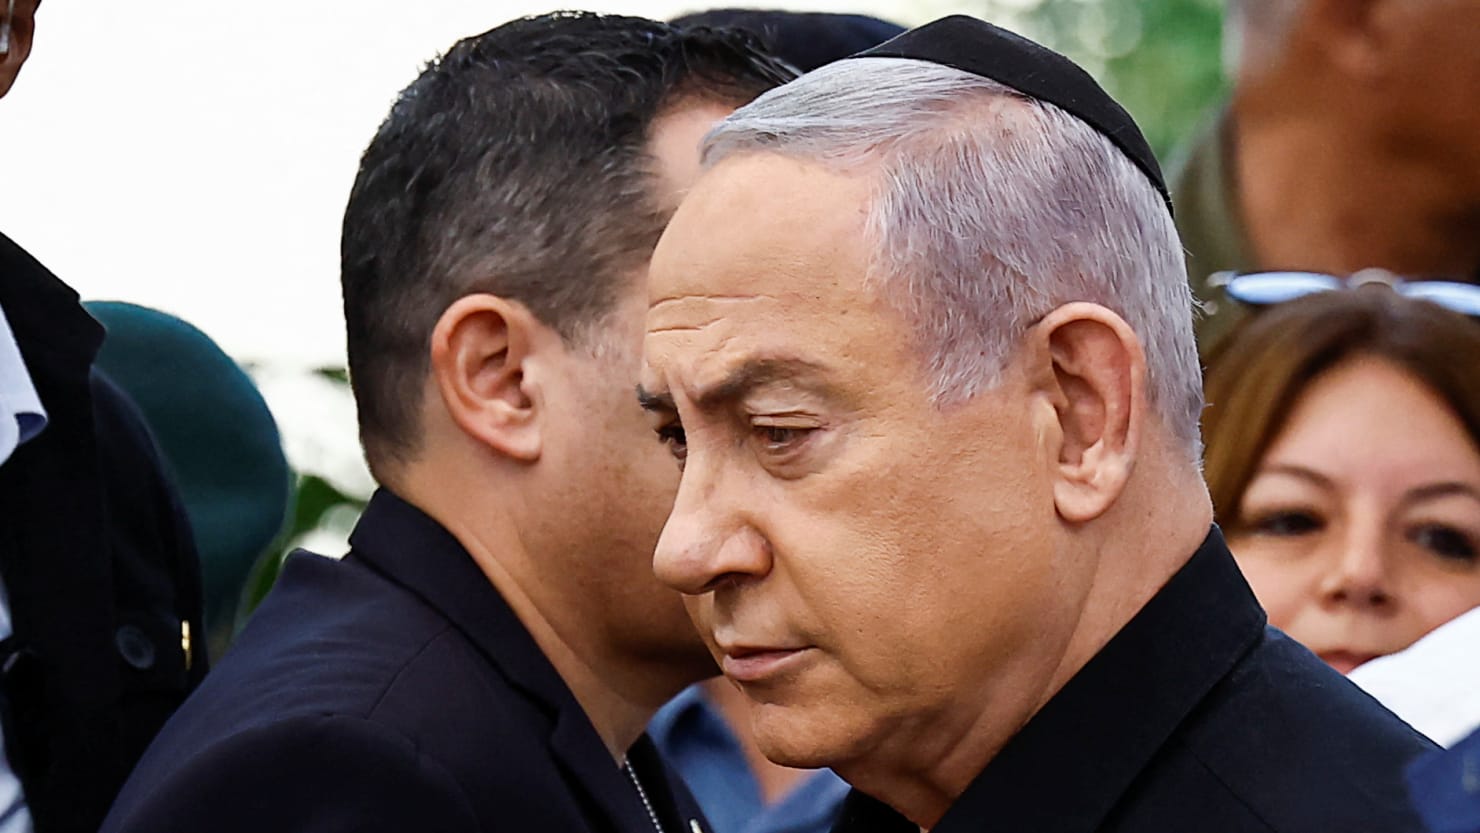 Израелски званичник Гади Ајзенкот каже да Бењамин Нетањаху лаже о рату у Гази